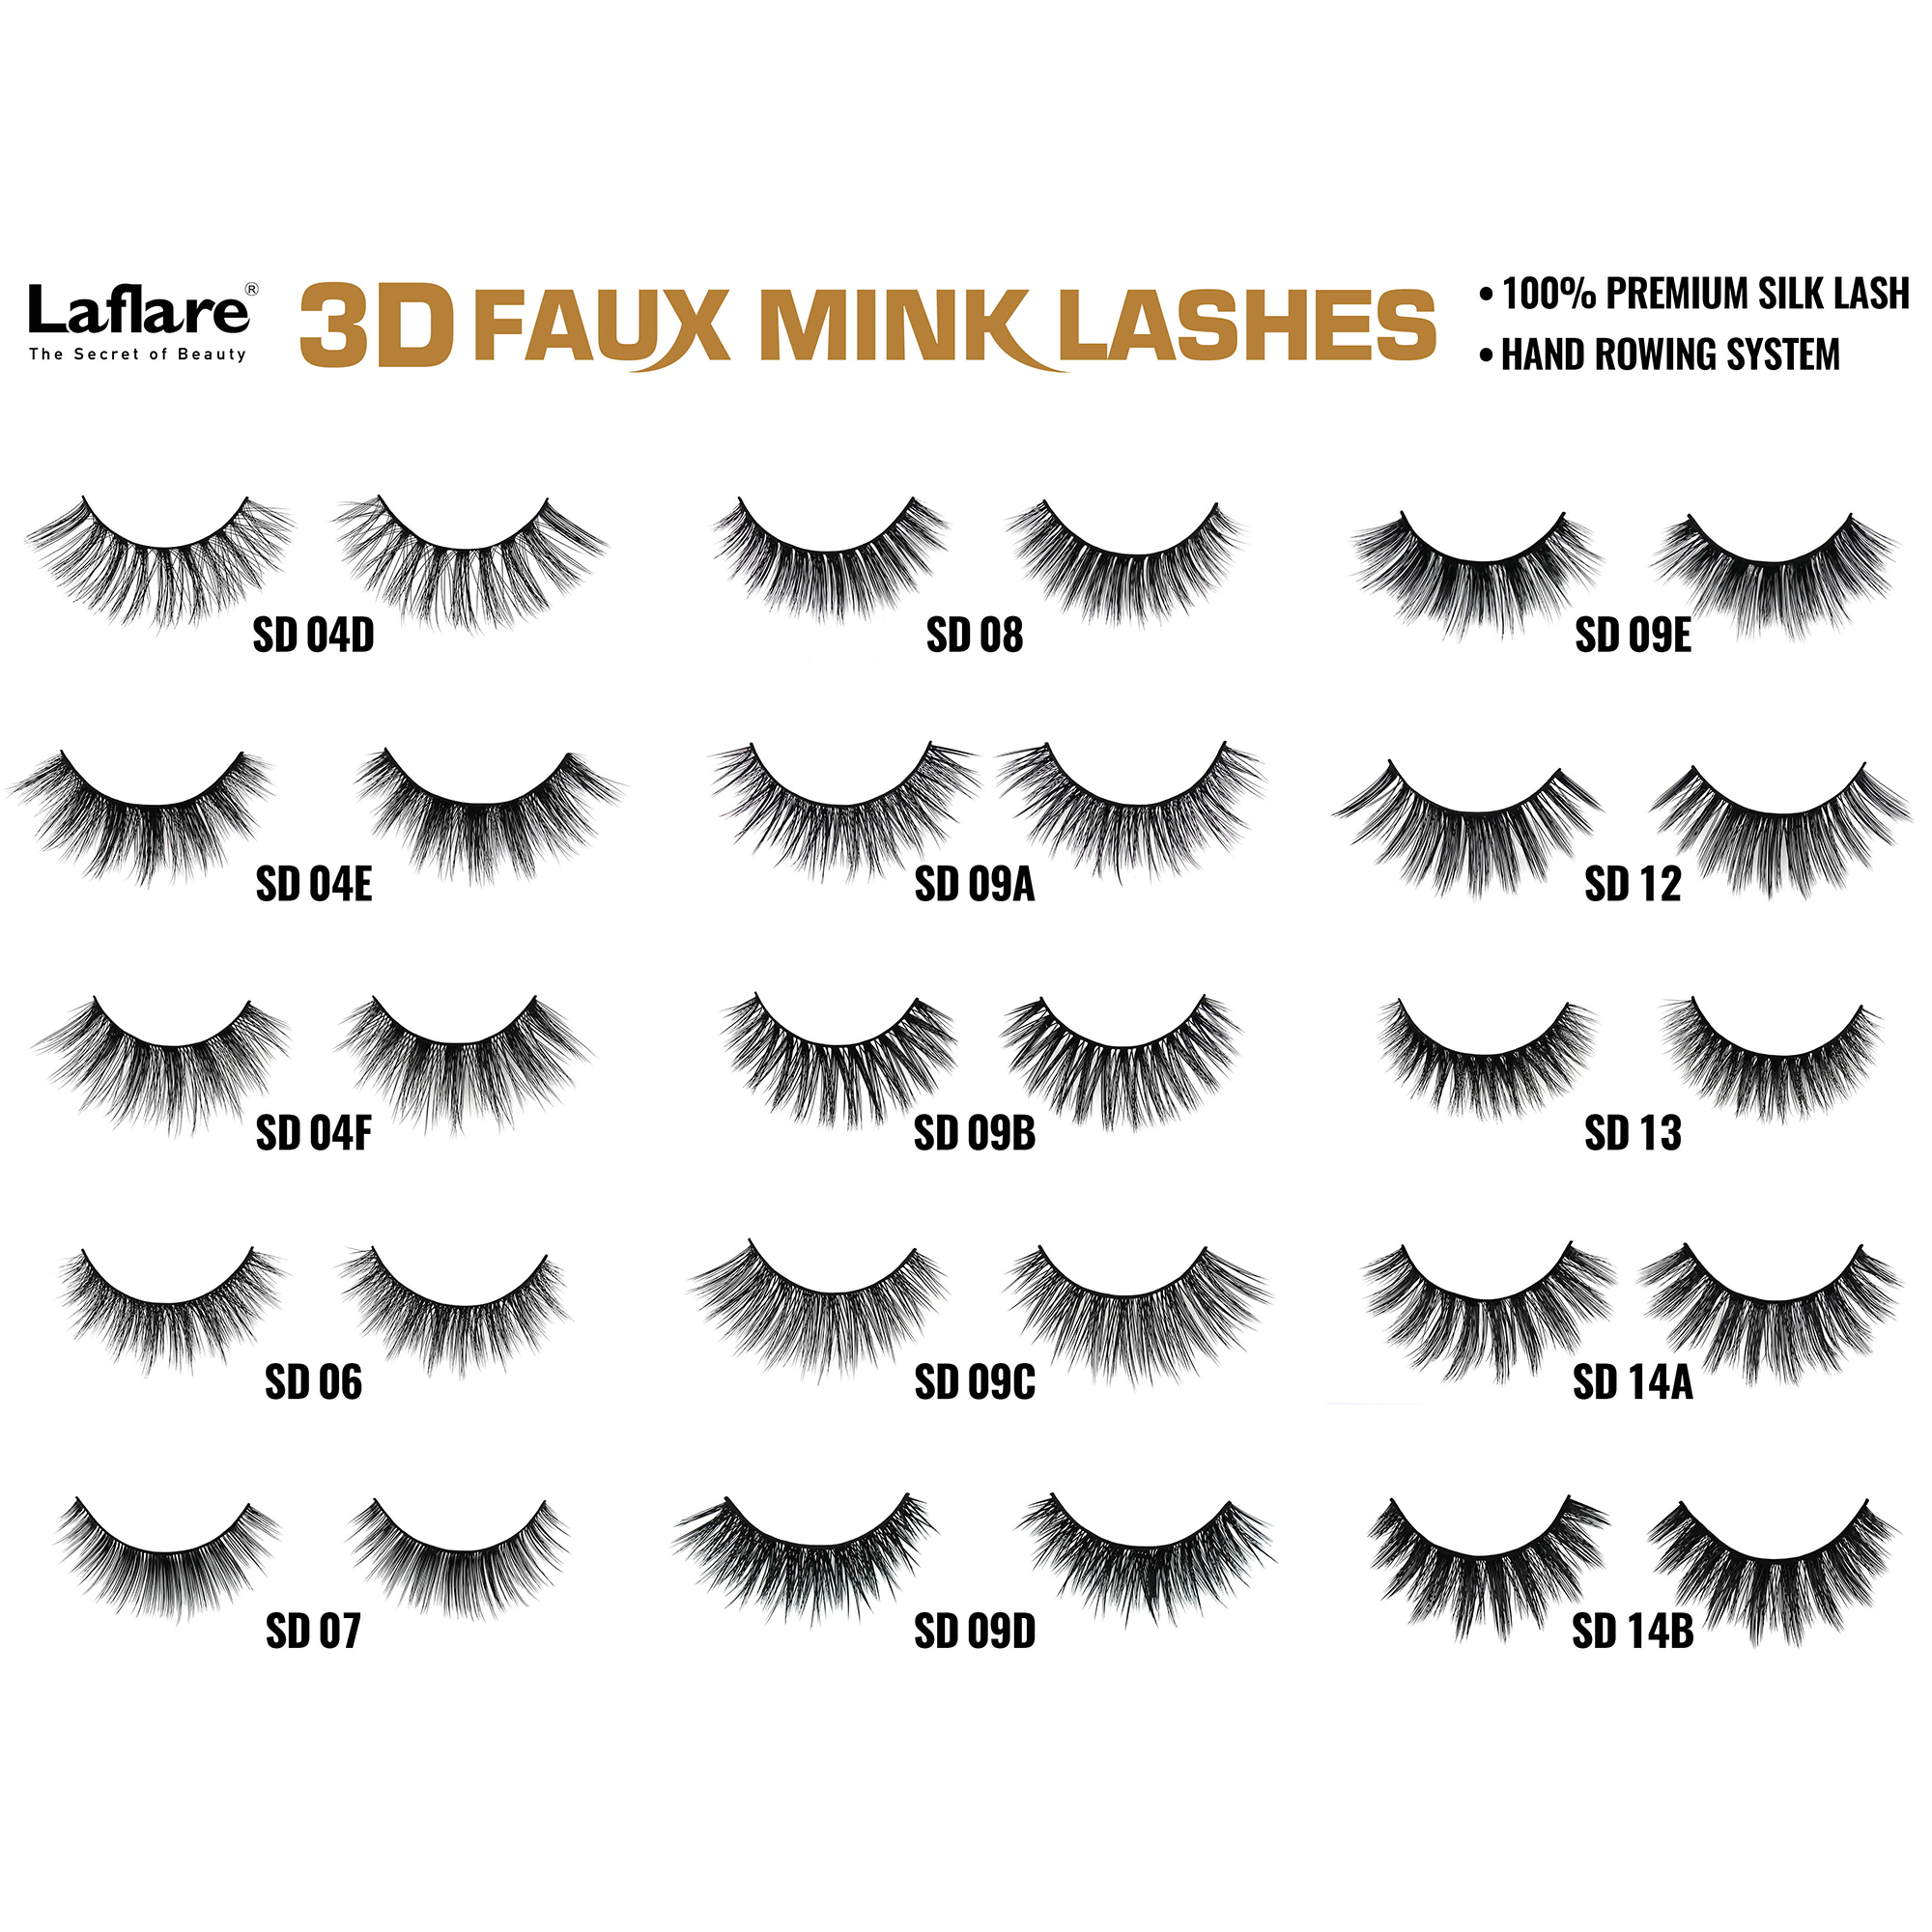 LAFLARE 3d Faux Mink Lashes - SD01A